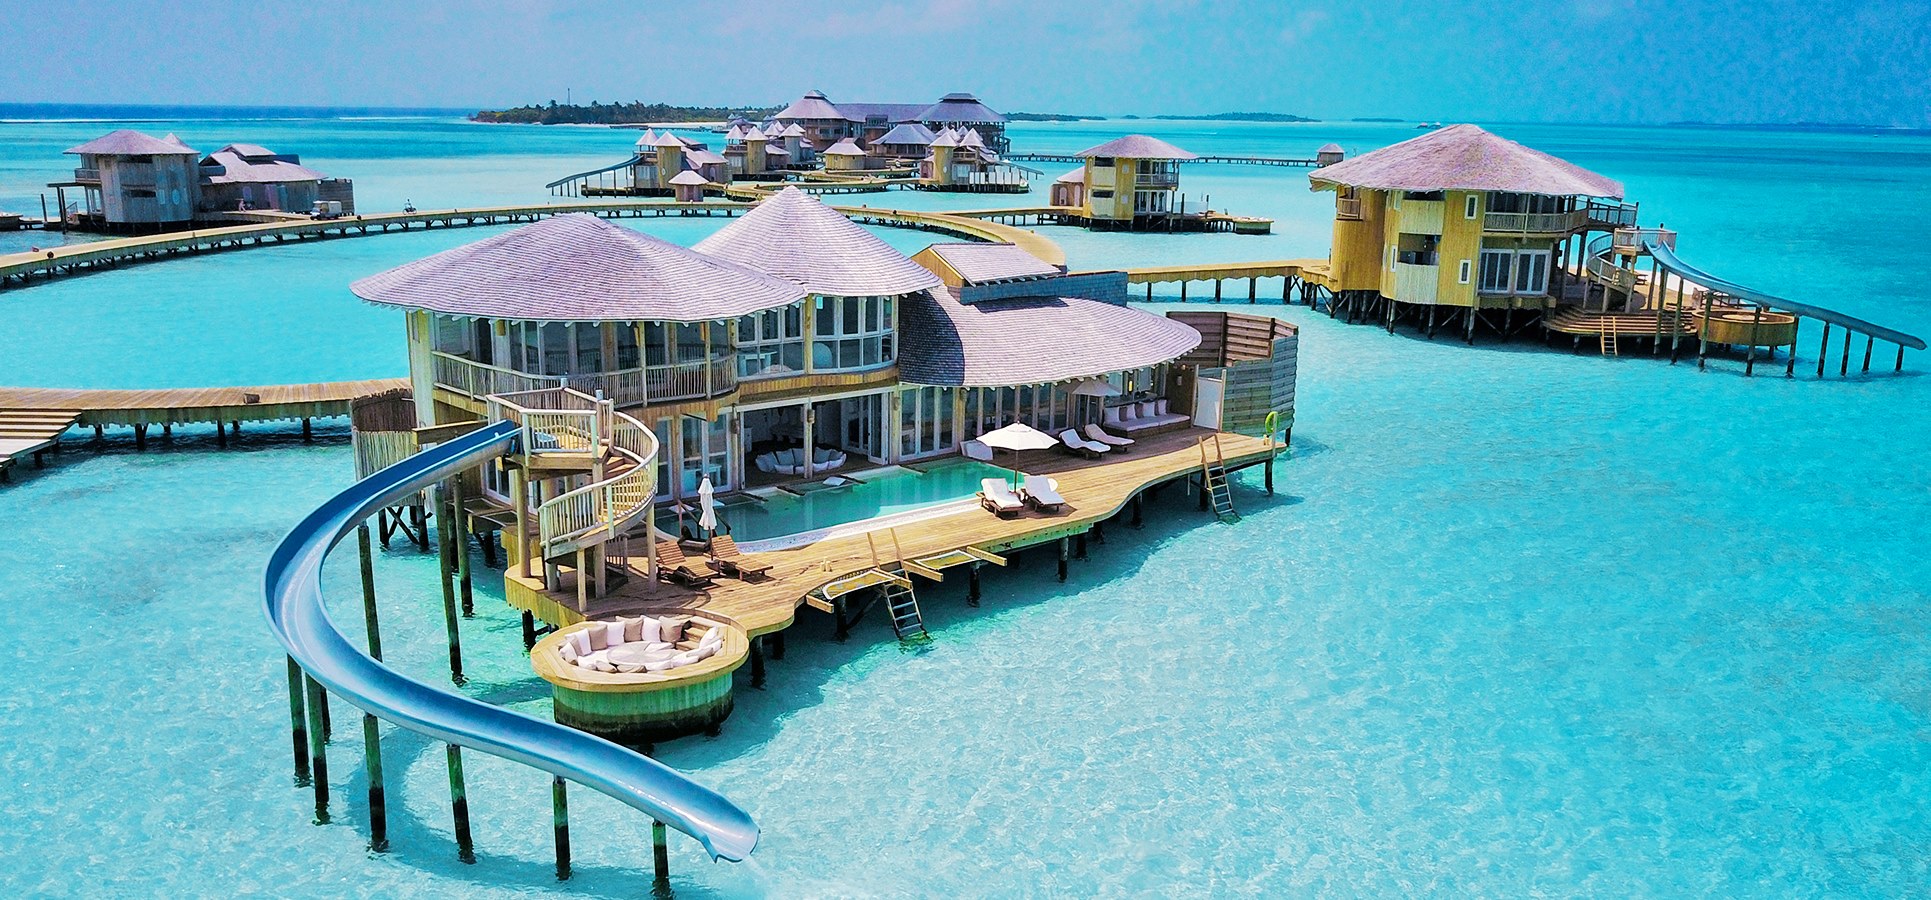 Dünyanın En Romantik Restoranları - Maldivler (CrabShack)